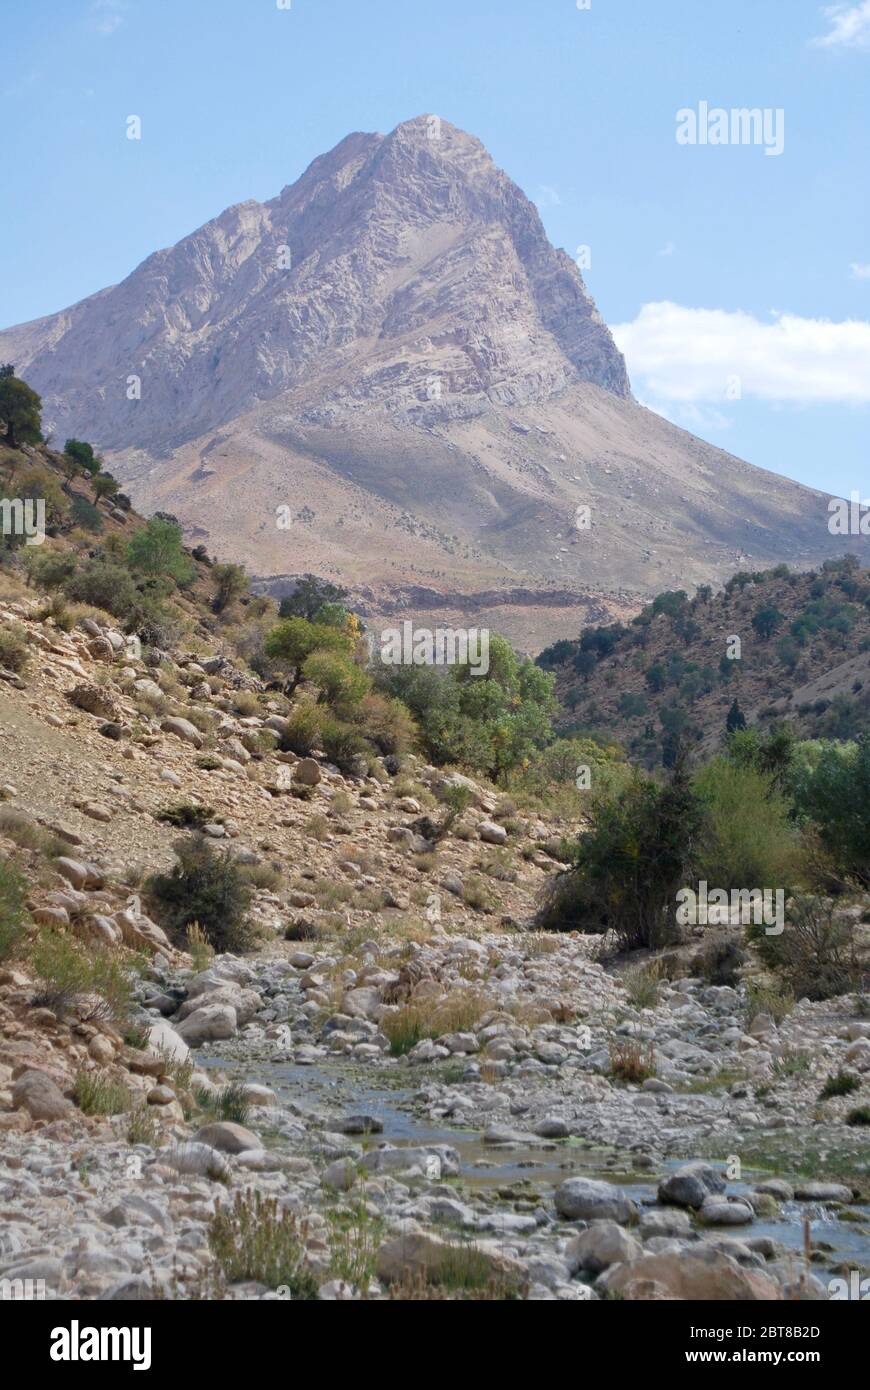 Zagros mountains, Iran Stock Photo